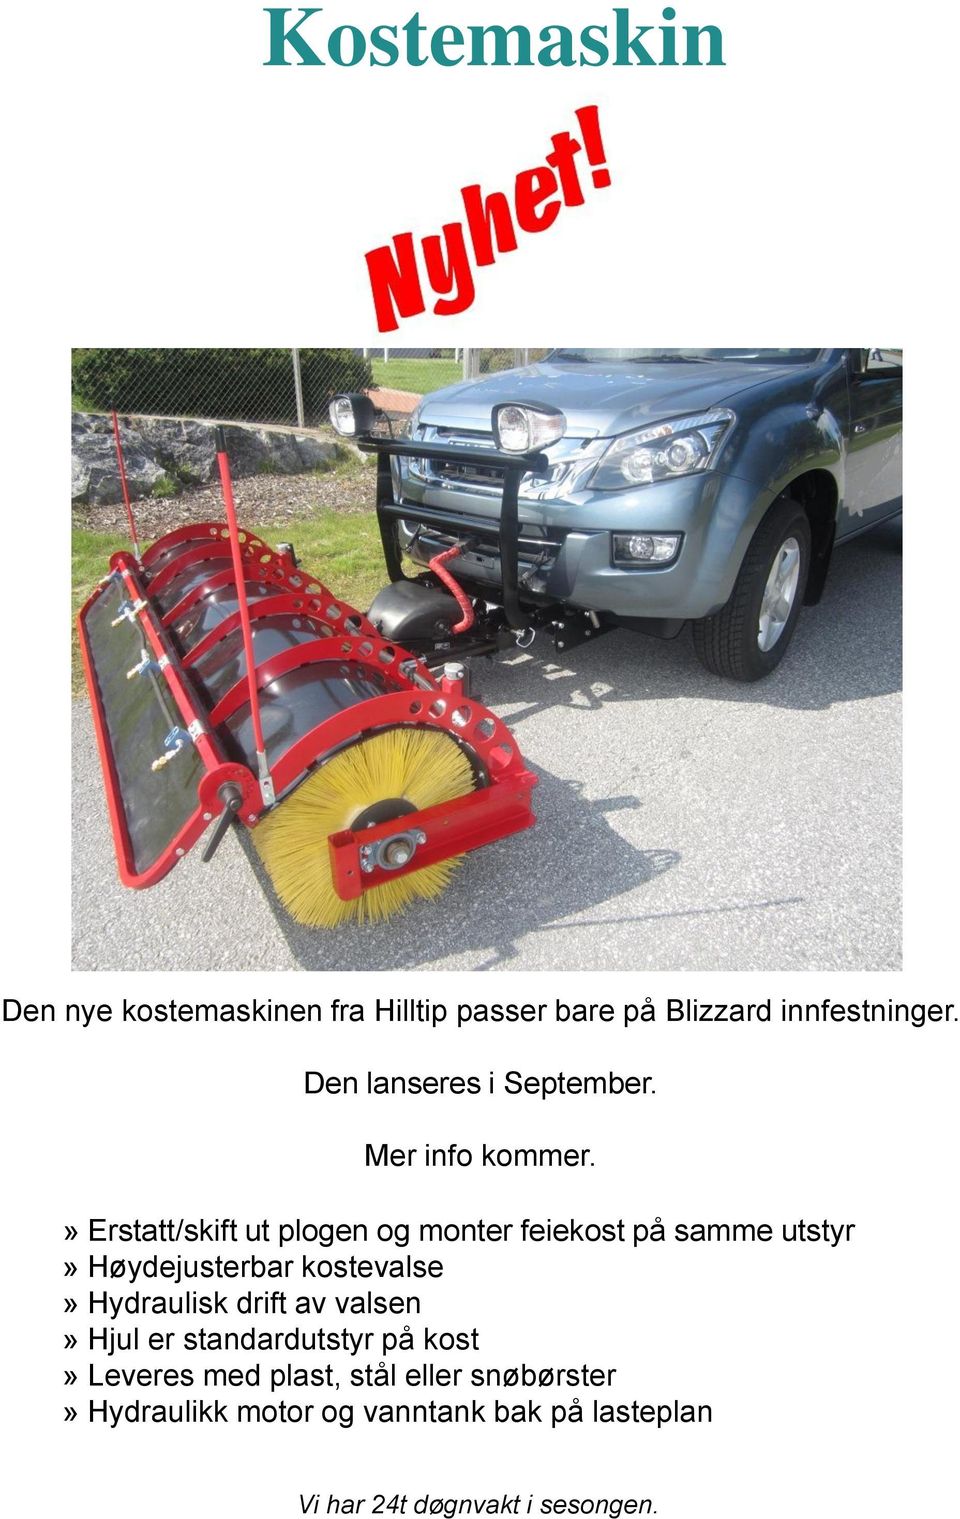 » Erstatt/skift ut plogen og monter feiekost på samme utstyr» Høydejusterbar kostevalse»